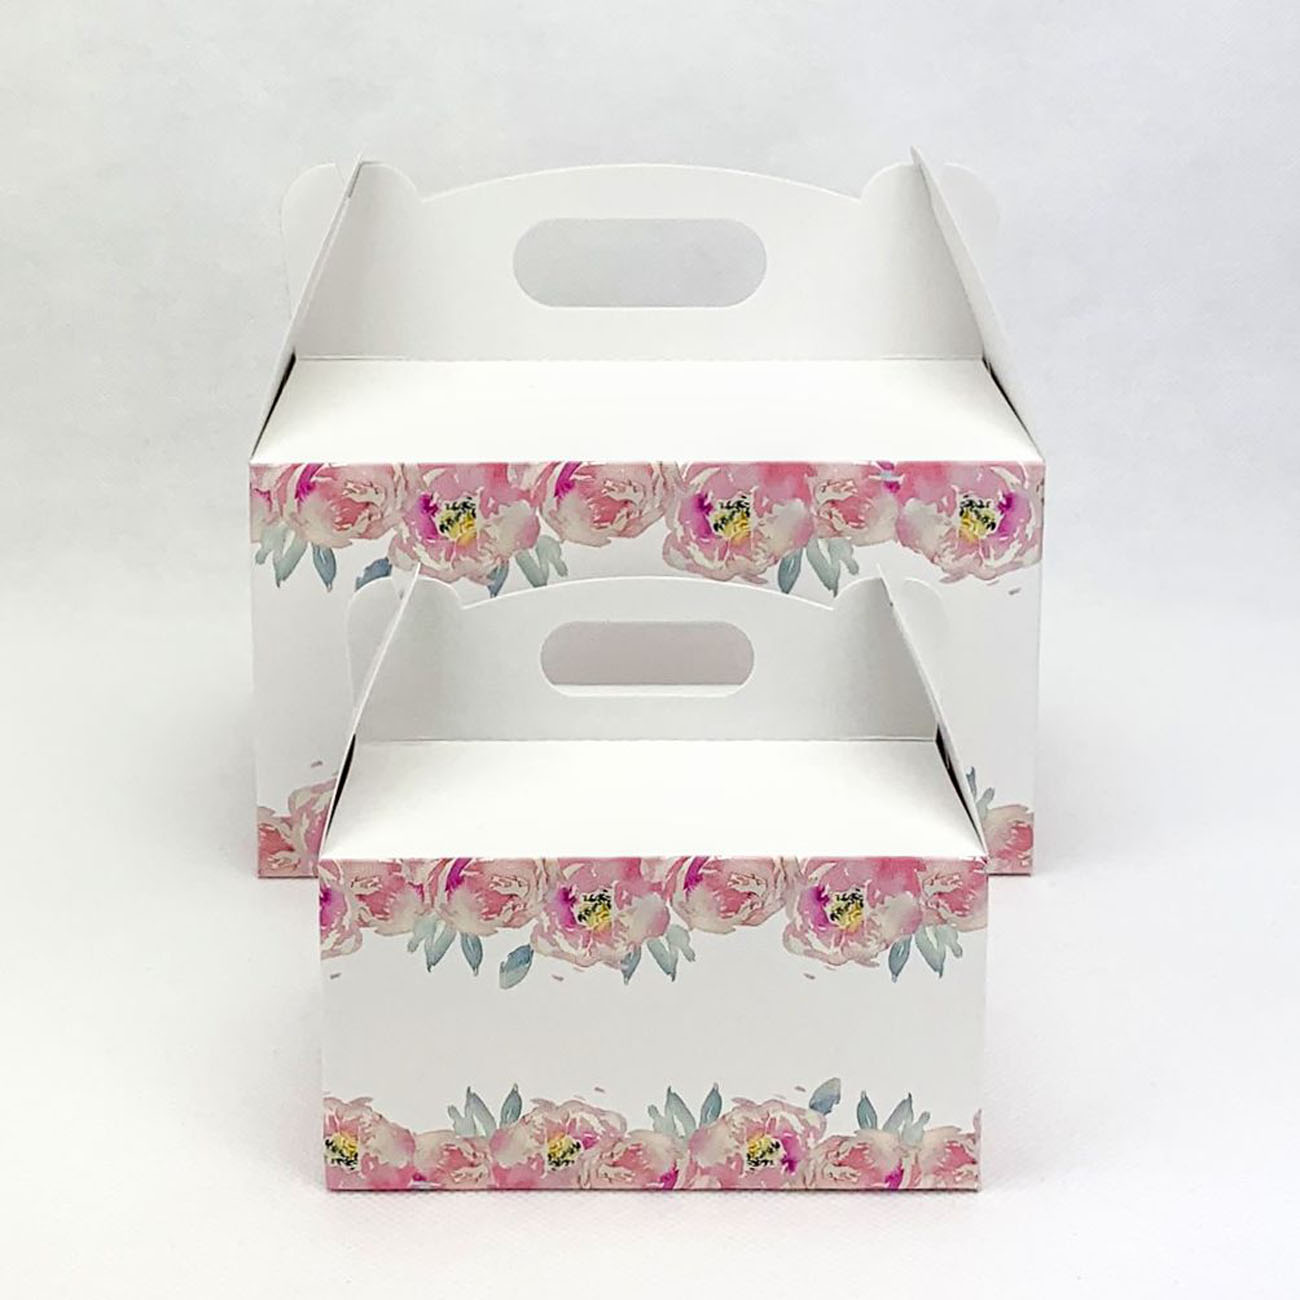 Svatební krabička střední s květy pivoněk - K56-4002-01